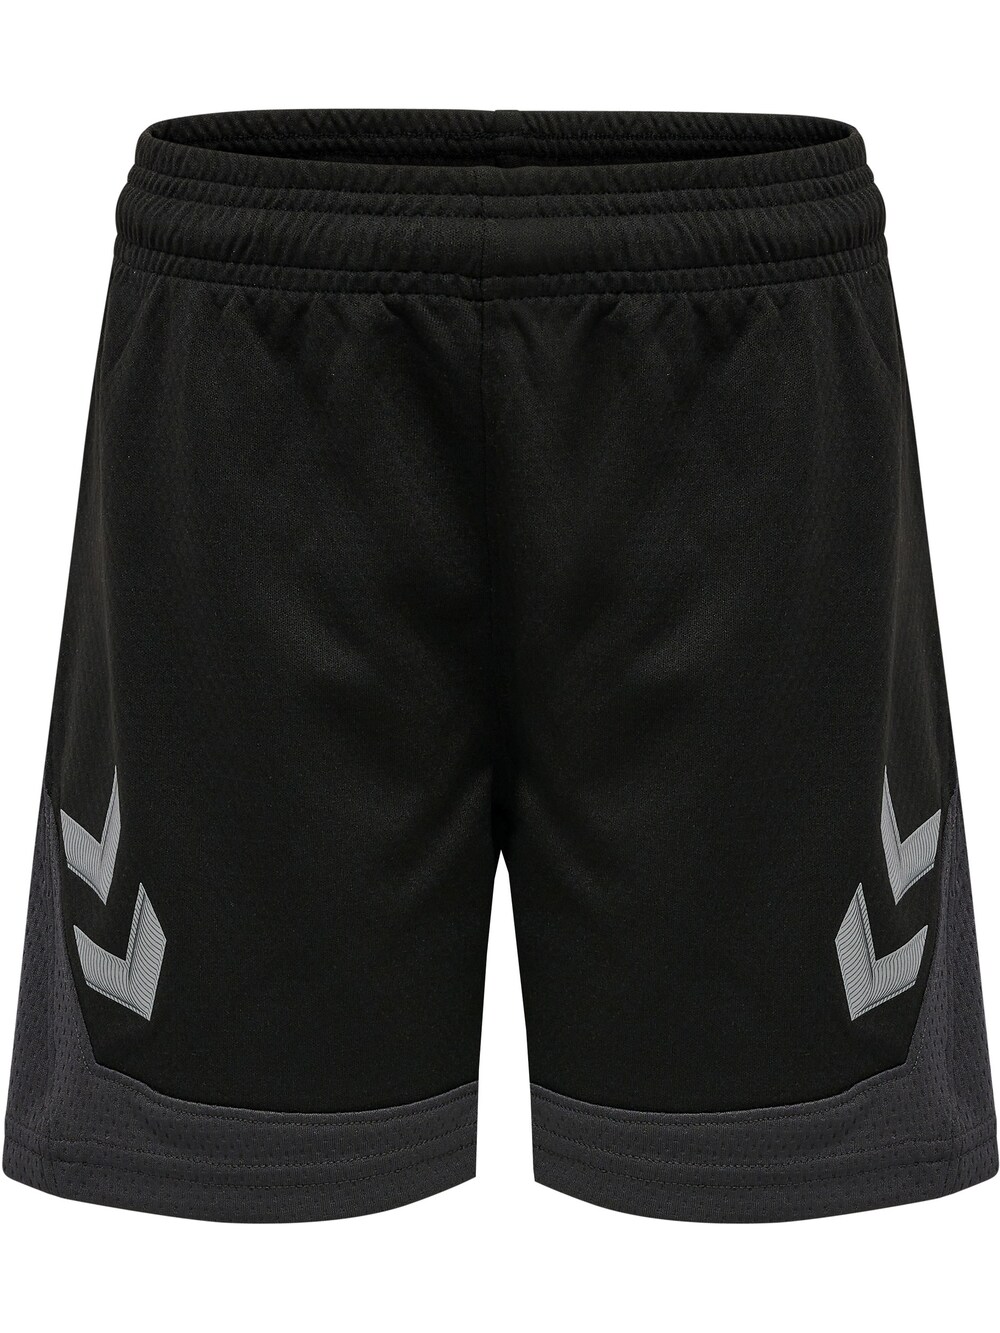 Обычные тренировочные брюки Hummel, черный обычные тренировочные брюки virtus черный